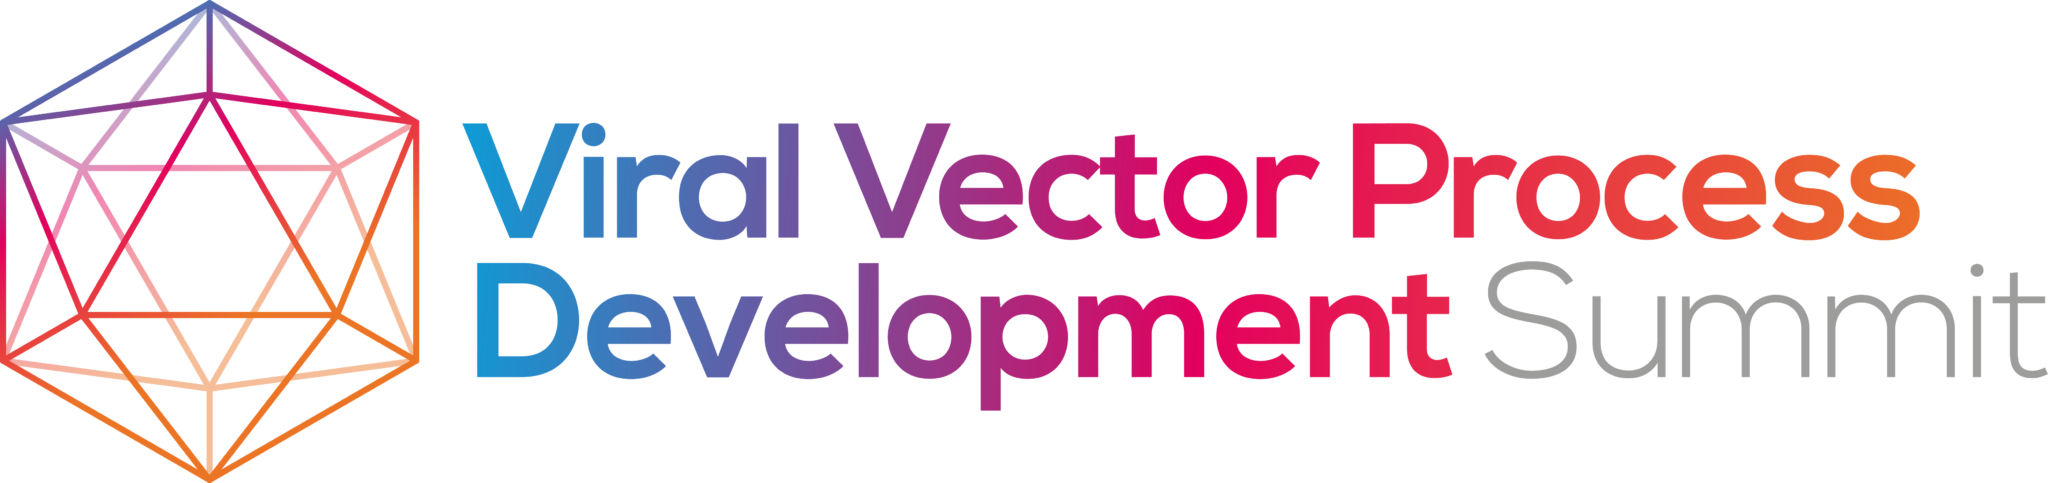 HW220825-31619-Viral-Vector-Process-Development-logo-FINAL-2048x483